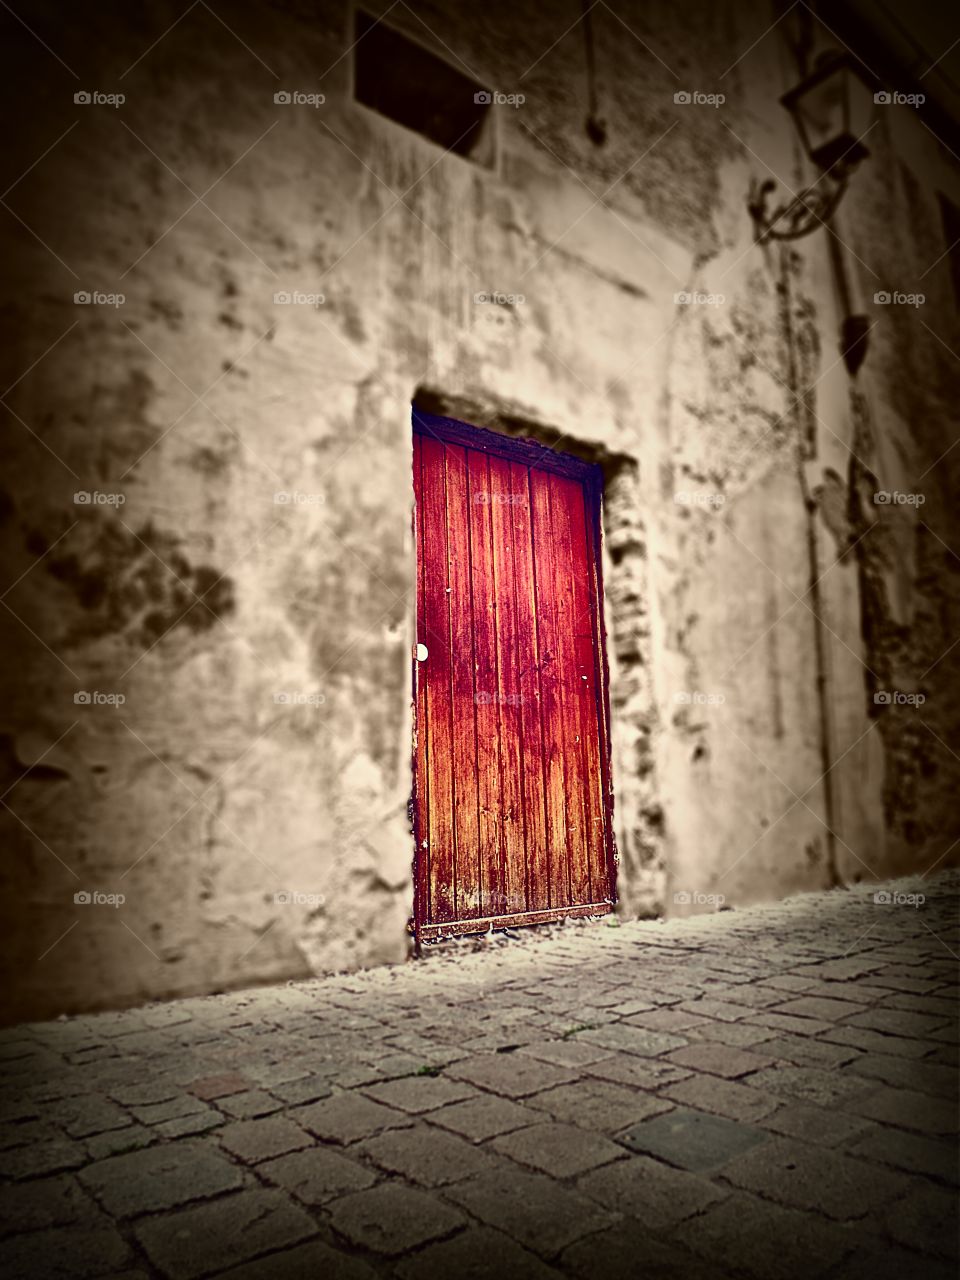 red door. what is behind this mystic door?